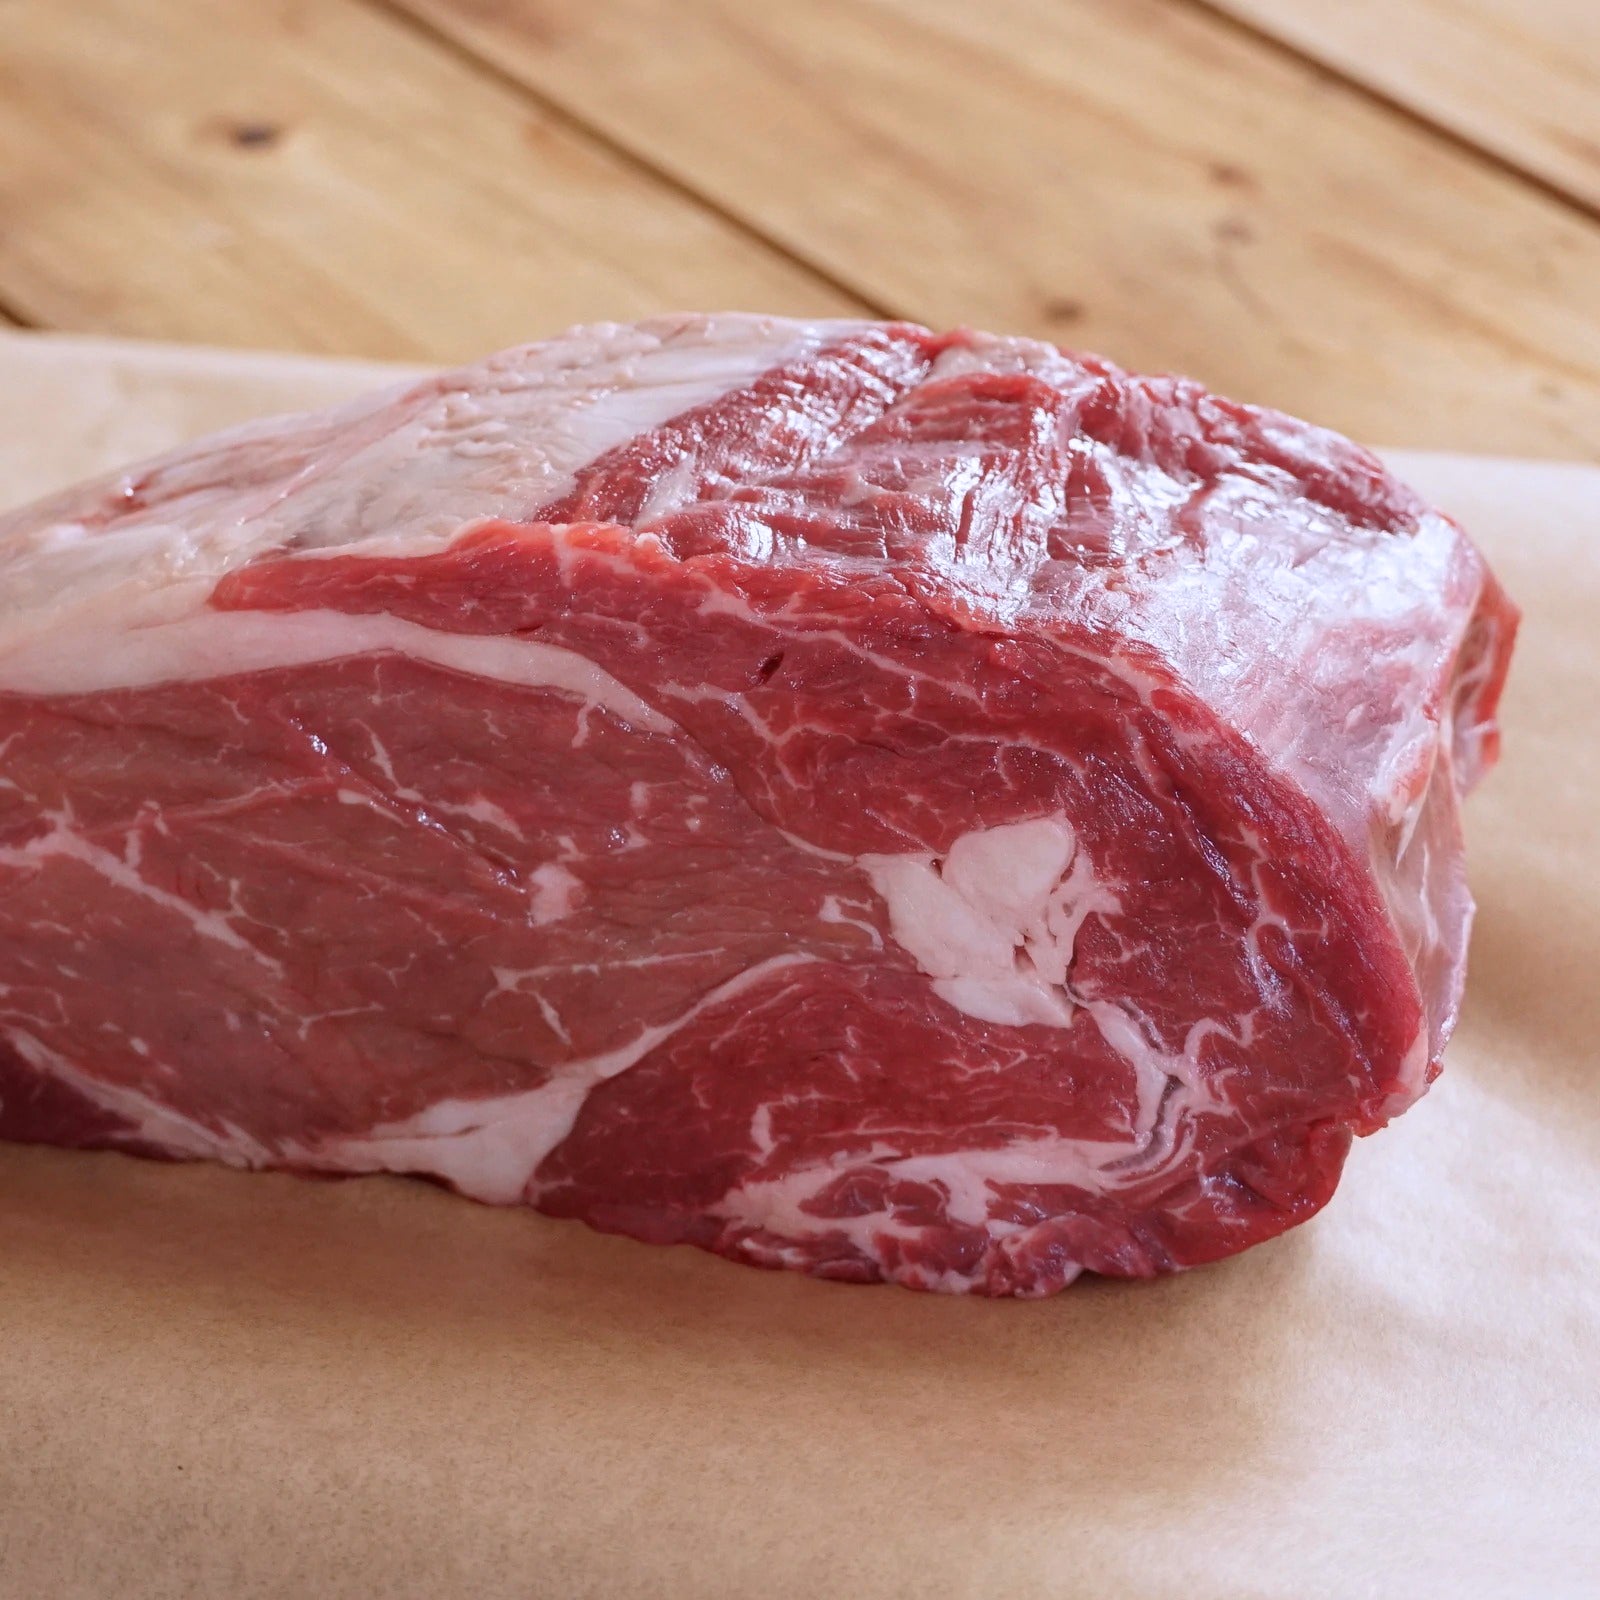 プレミアム グレインフェッドビーフ 霜降り 牛肉 リブロース ブロック オーストラリア産 放牧牛 (1kg) ホライズンファームズ